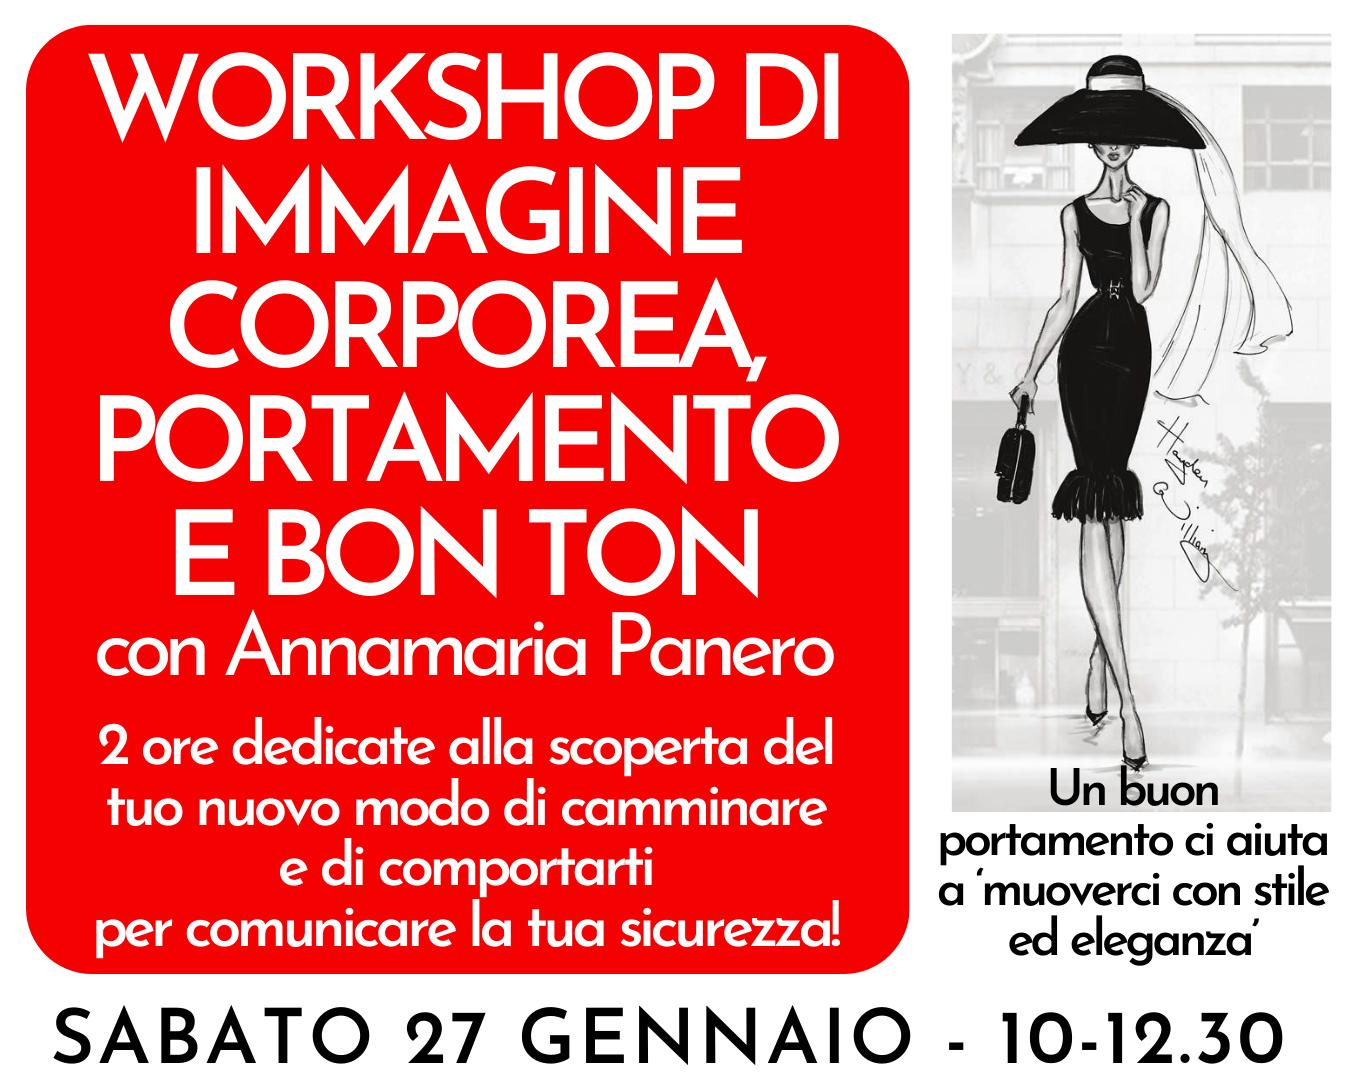 Workshop di IMMAGINE CORPOREA, PORTAMENTO E BON TON